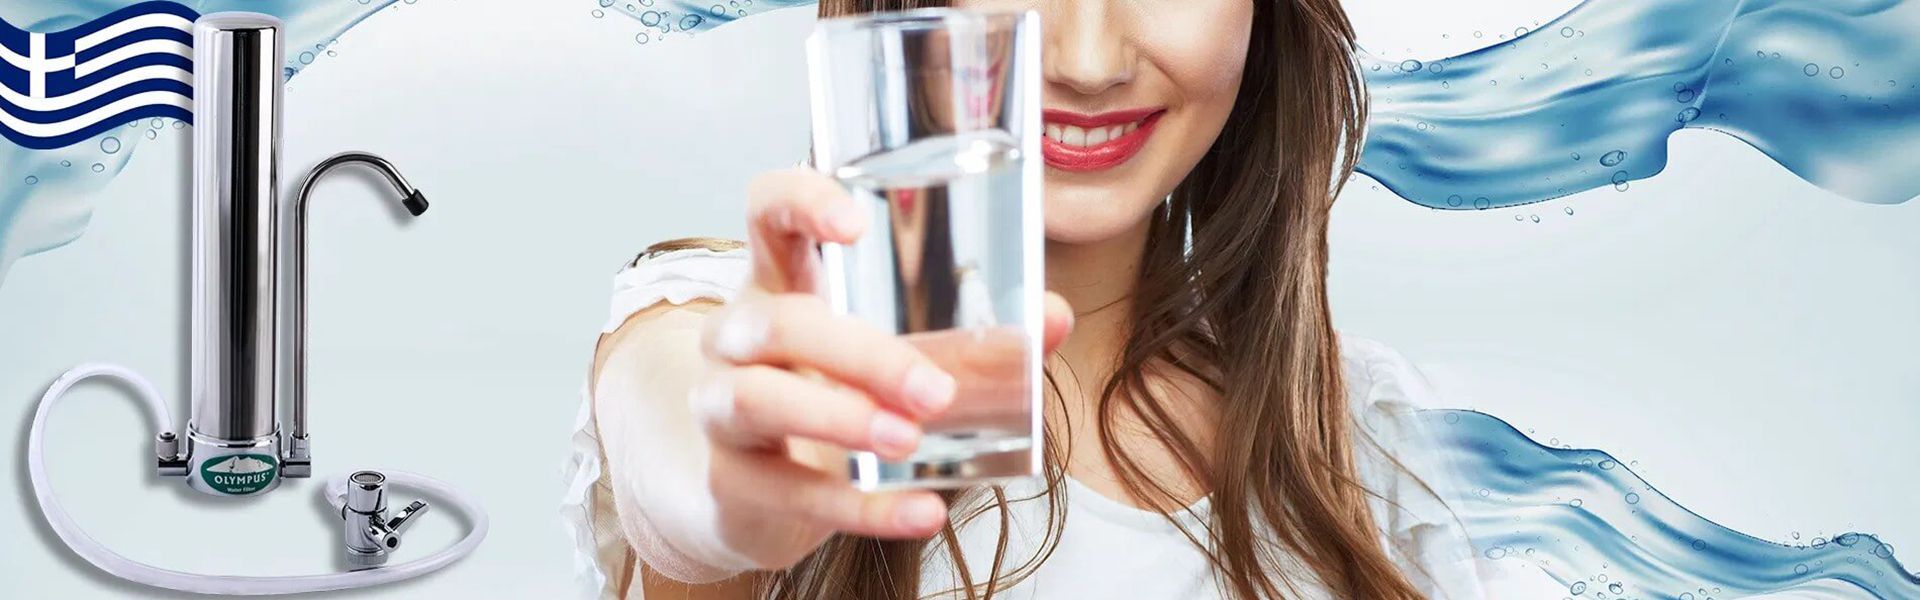 Slajd - 1 - kobieta ze szklanką wody